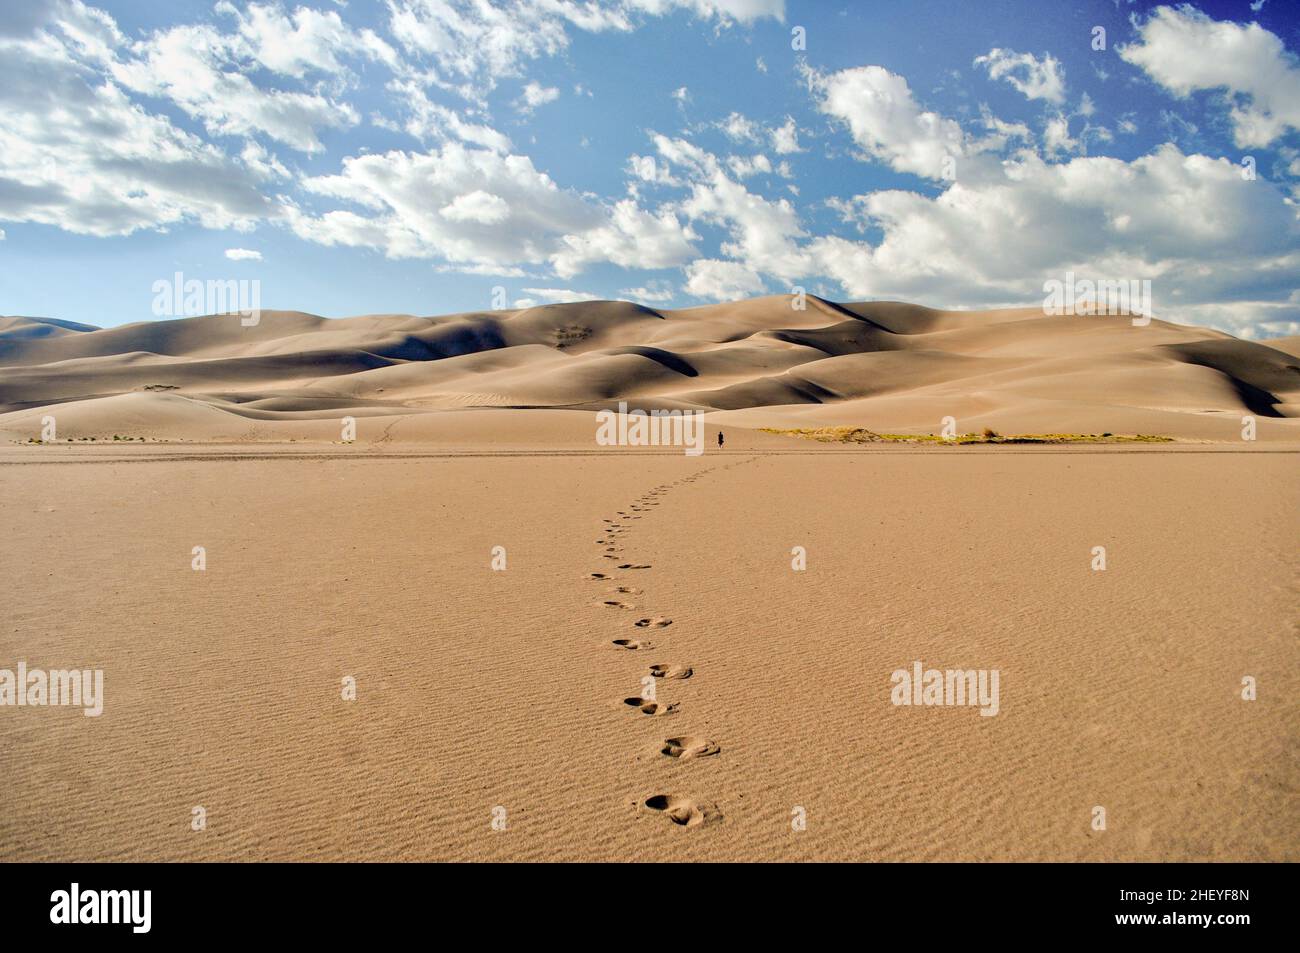 Die kleine Figur eines Mannes geht in der Ferne durch eine Wüste in Richtung hoch aufragender Sanddünen und hinterlässt eine Spur von unterschiedlichen Fußabdrücken - Great Sand Stockfoto